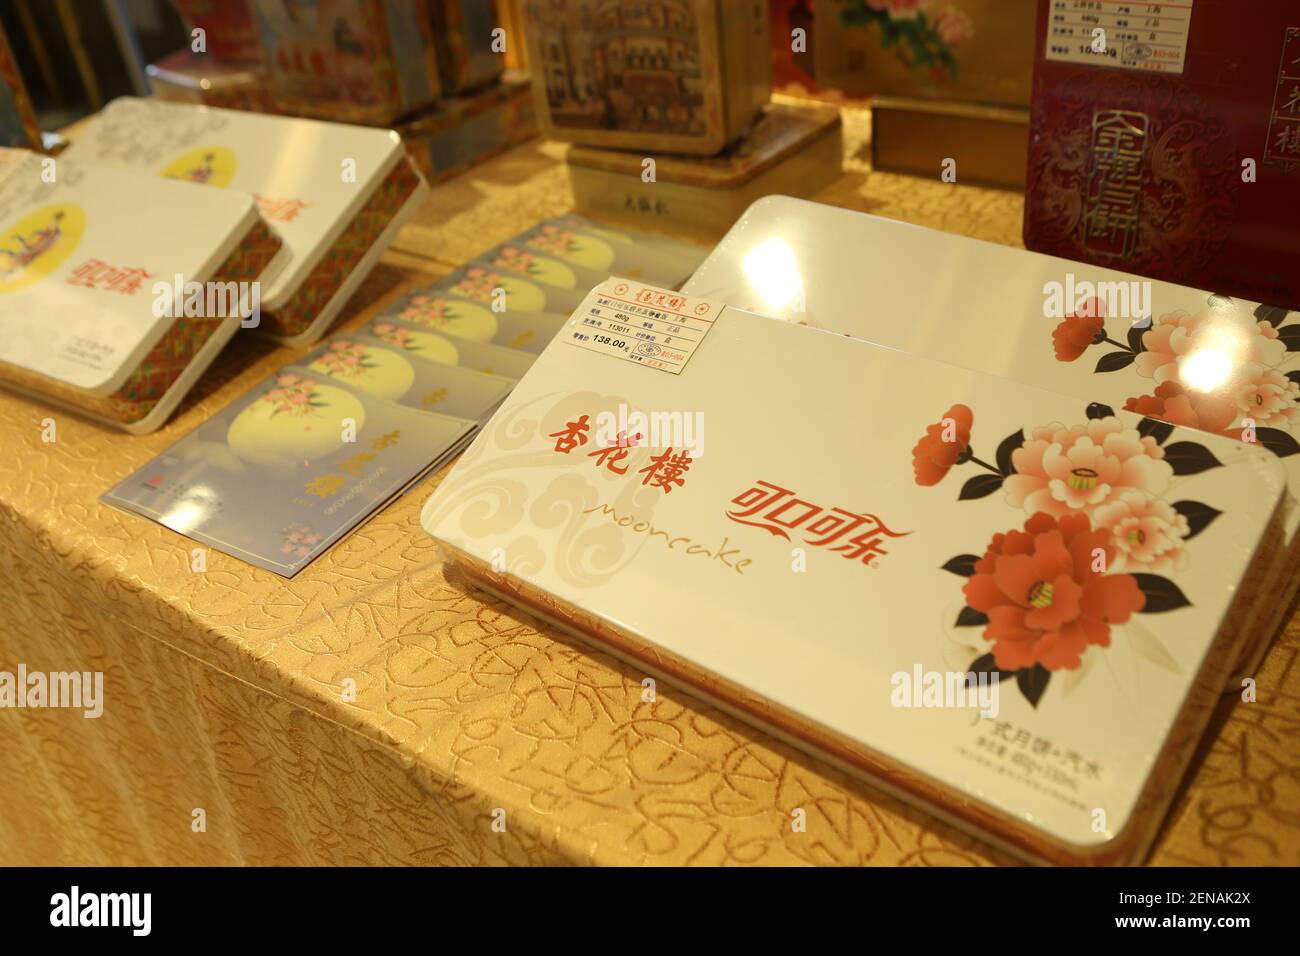 La caja de regalo de Marca conjunta compuesta de pastel de luna de Shanghai Xinghualou Food and Beverage Co., Ltd y Coca-Cola Company de los Estados Unidos, se lanza en Shanghai China, el 14 de julio de 2019. (Foto de Wang Yadong - Imaginechina/Sipa USA) Foto de stock